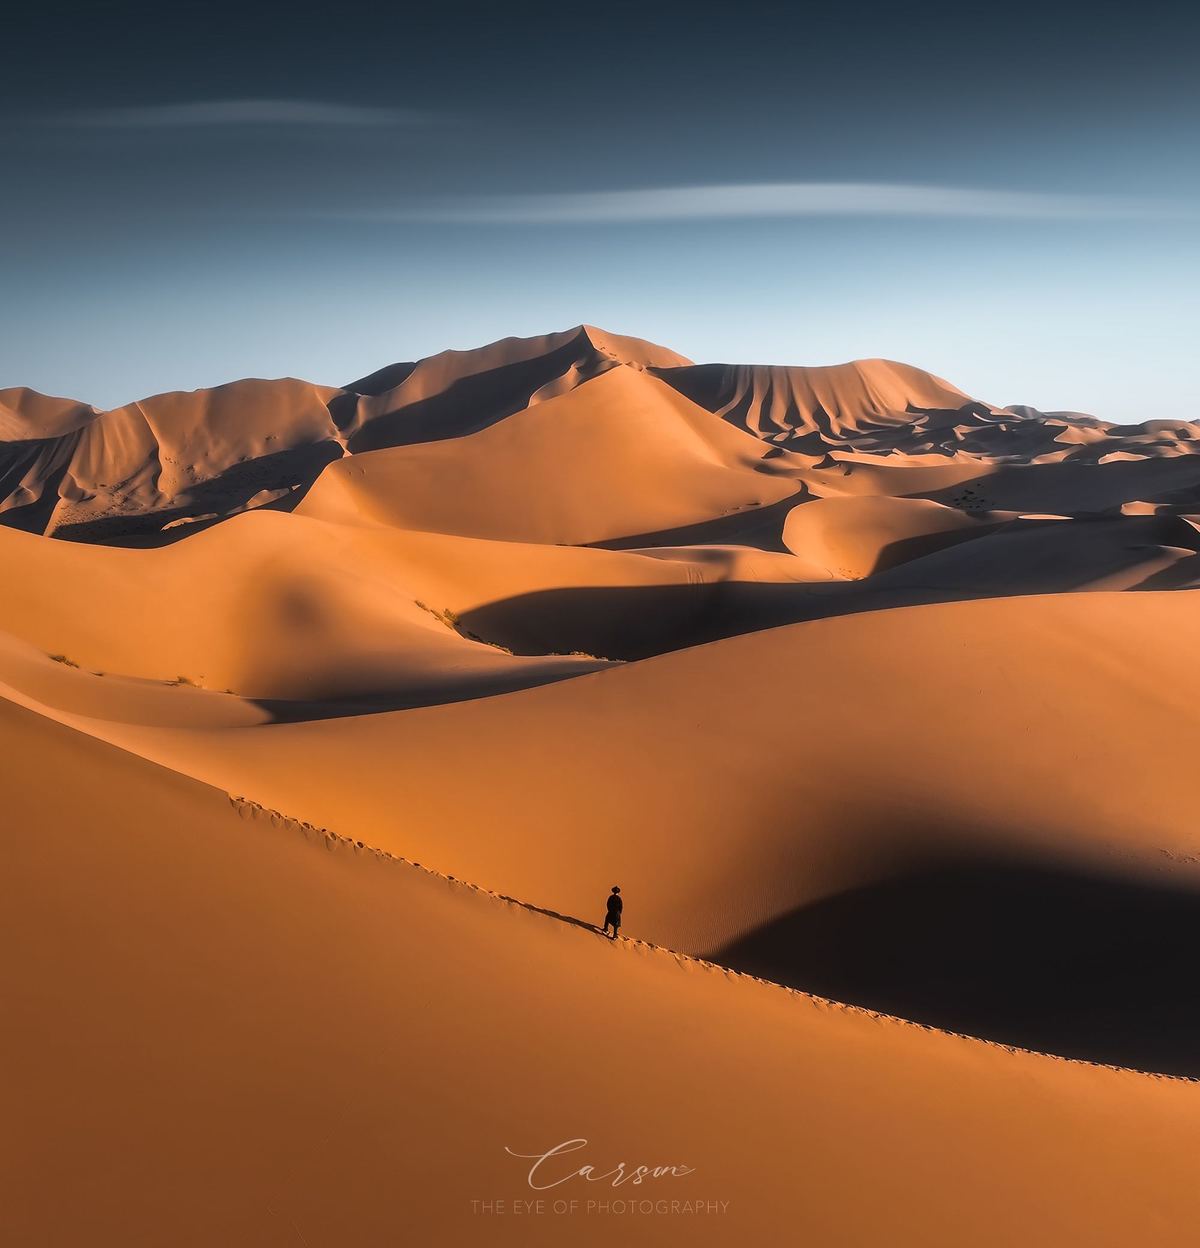 一个人站在沙漠中的大沙丘顶部 远处有山脉。